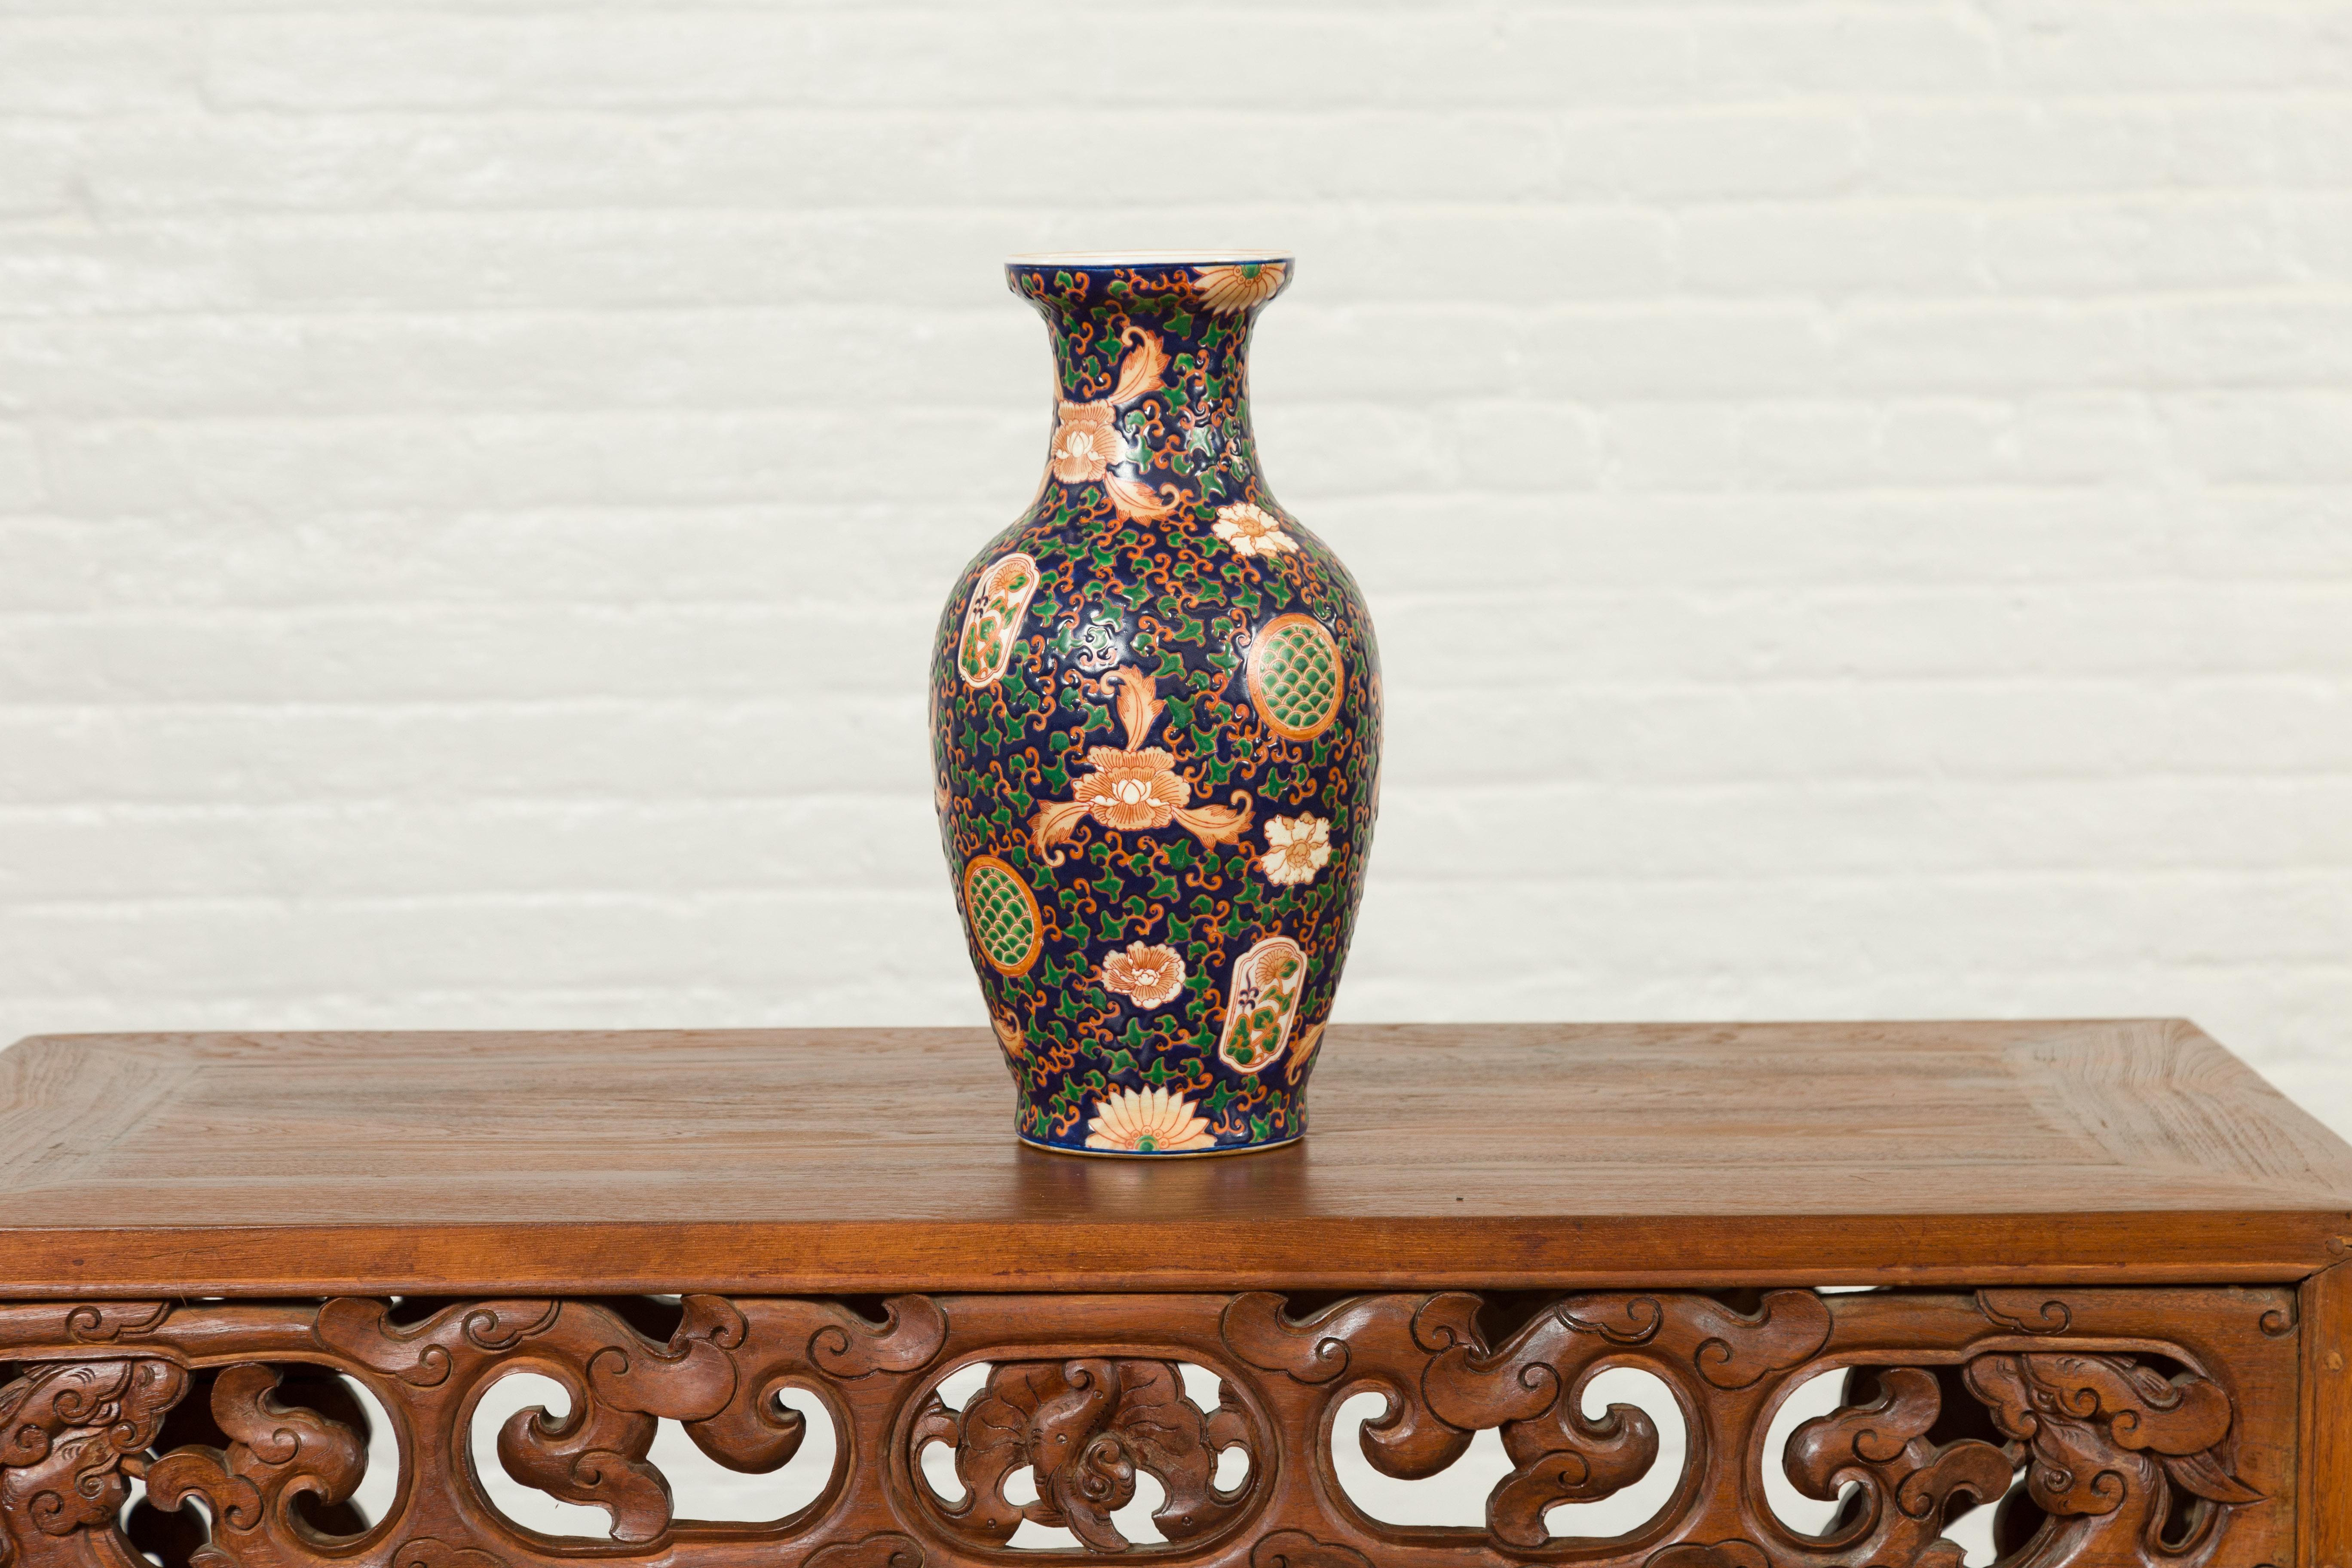 Zeitgenössische handbemalte chinesische Vase mit kobaltblauem Grund und grünem und orangefarbenem Blumendekor. Diese chinesische, handbemalte Vase bezaubert durch ihre reichhaltigen Motive. Der kobaltblaue Grund ist mit zarten, orangefarbenen,